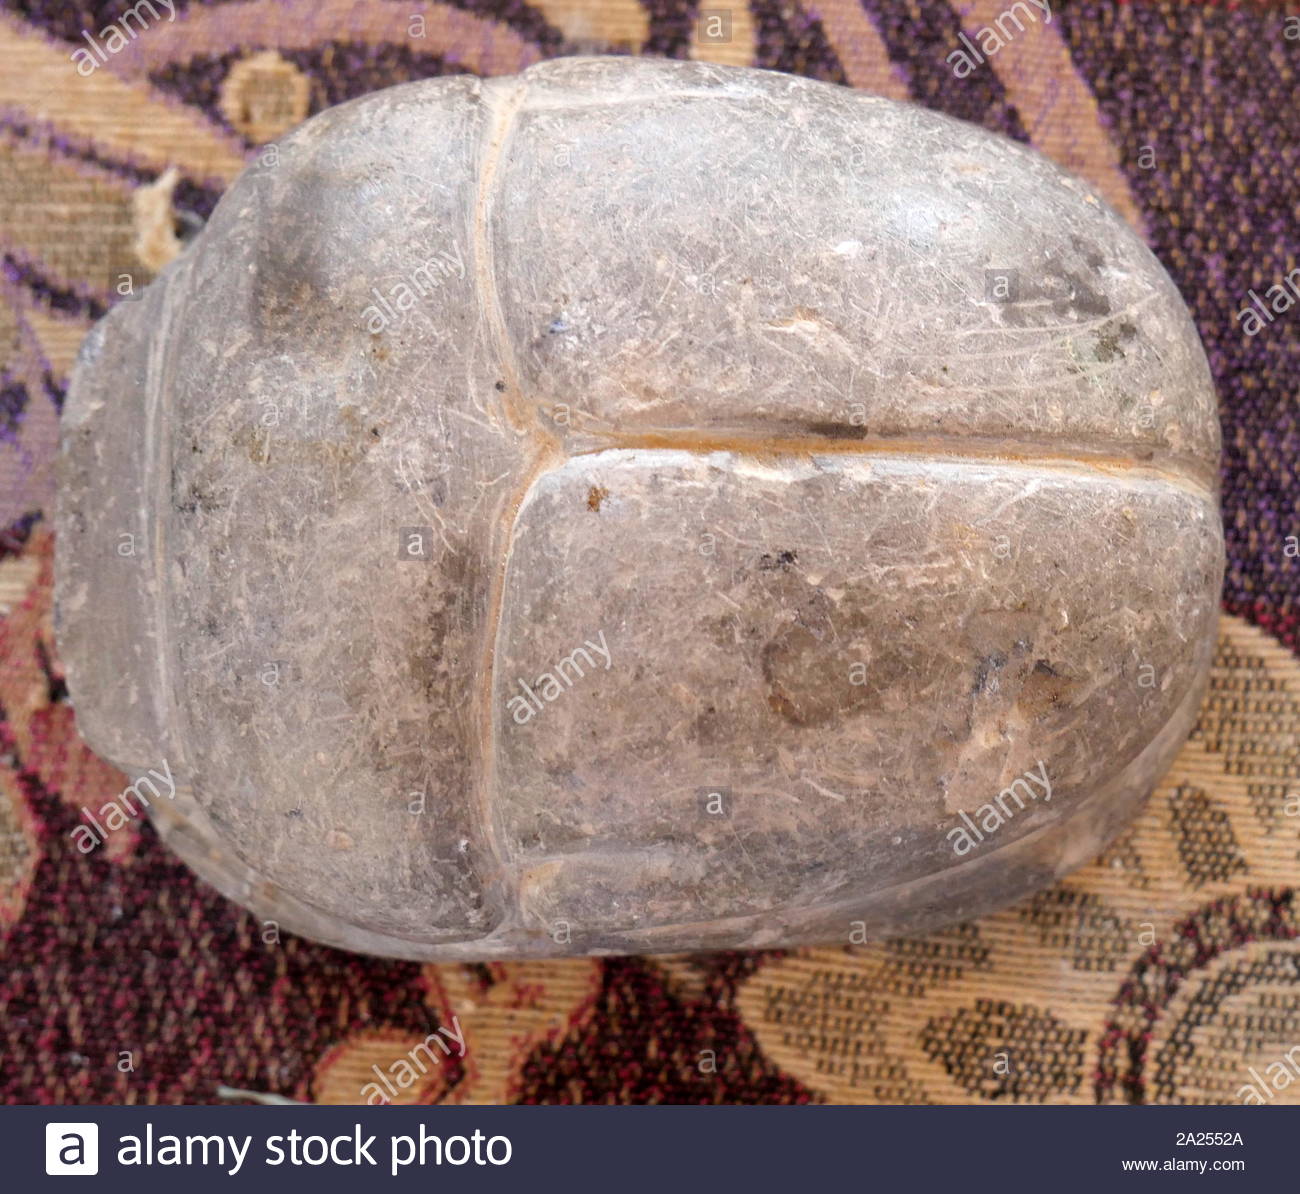 Alabaster Skarabäus Käfer. "Ägyptischer Alabaster', haben eine durchscheinende aussehen, wenn sie dem Licht ausgesetzt Stockfoto